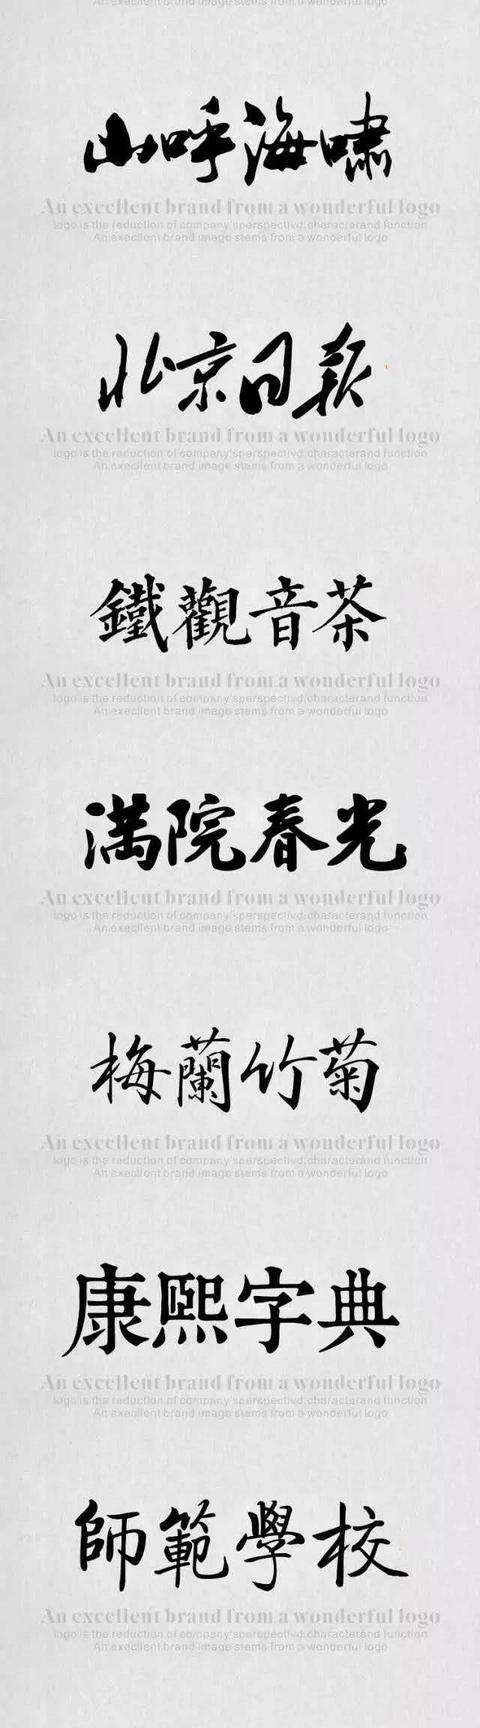 毛笔中文字体（推荐109款恢弘磅礴有气势字体）